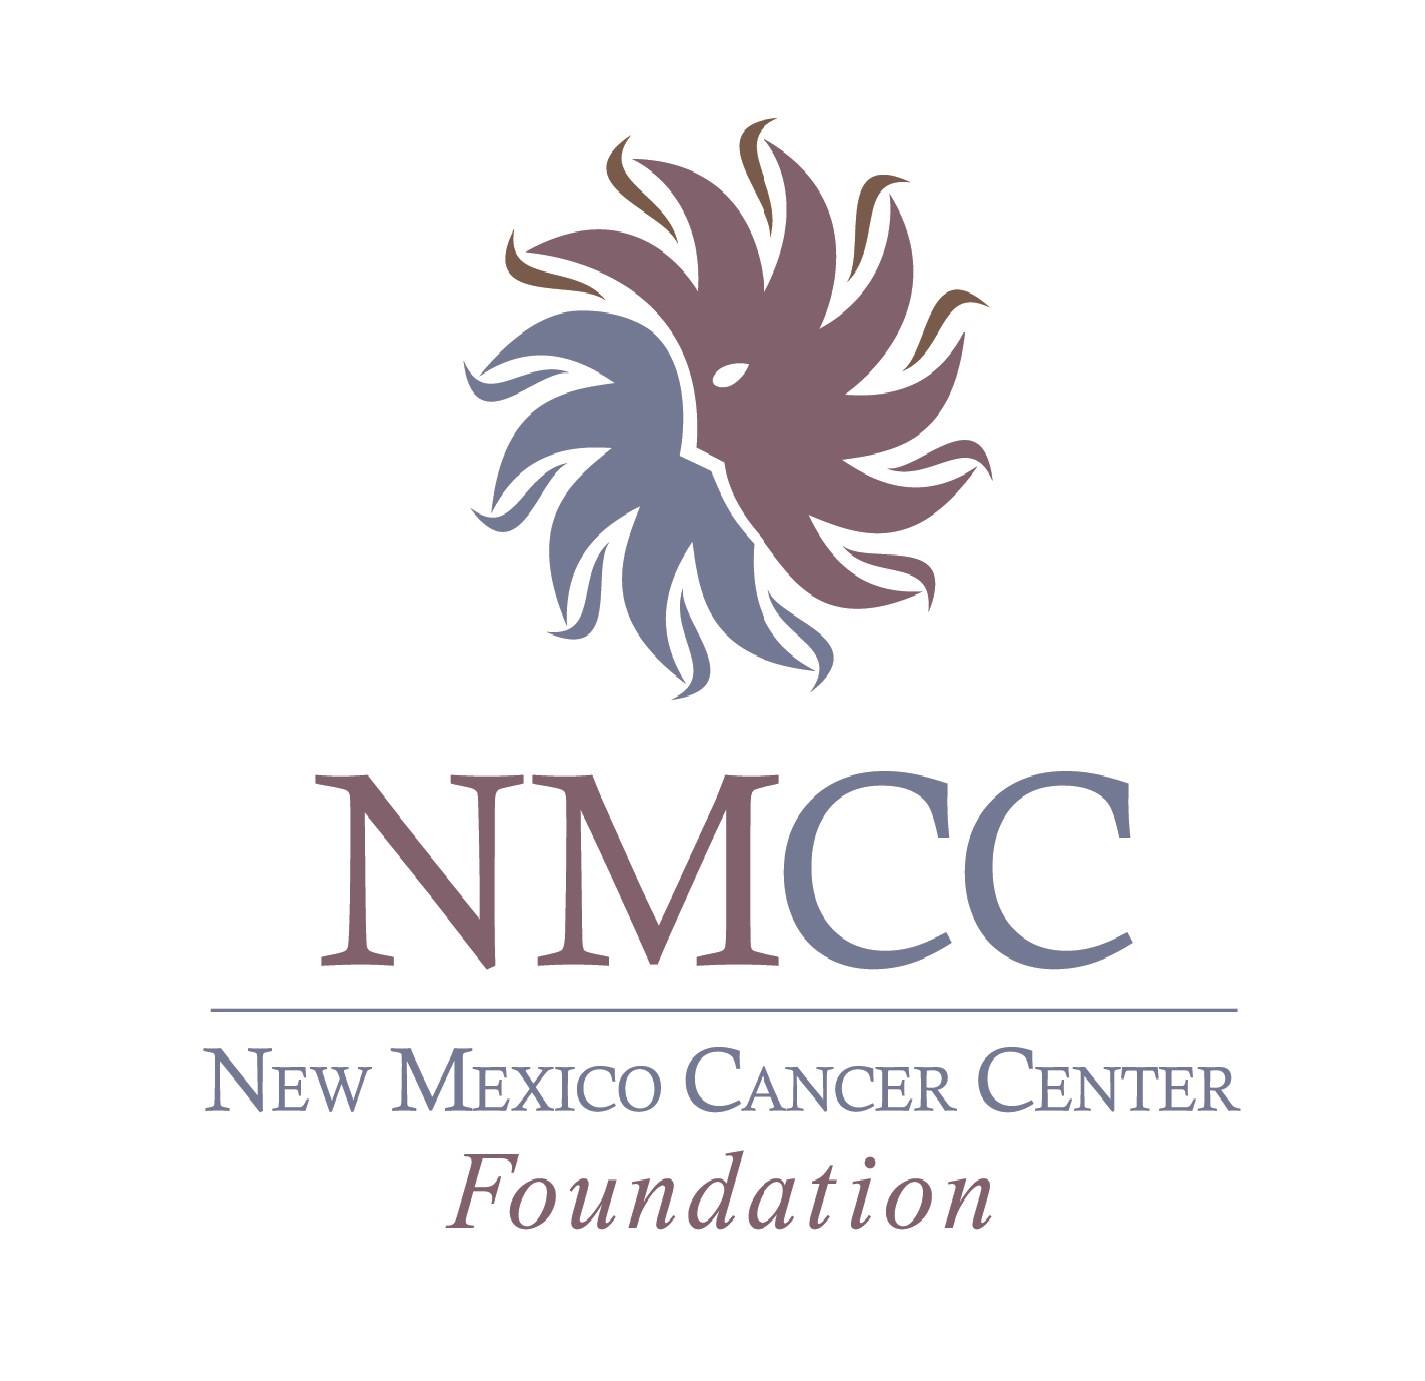 New Mexico Cancer Center Foundation